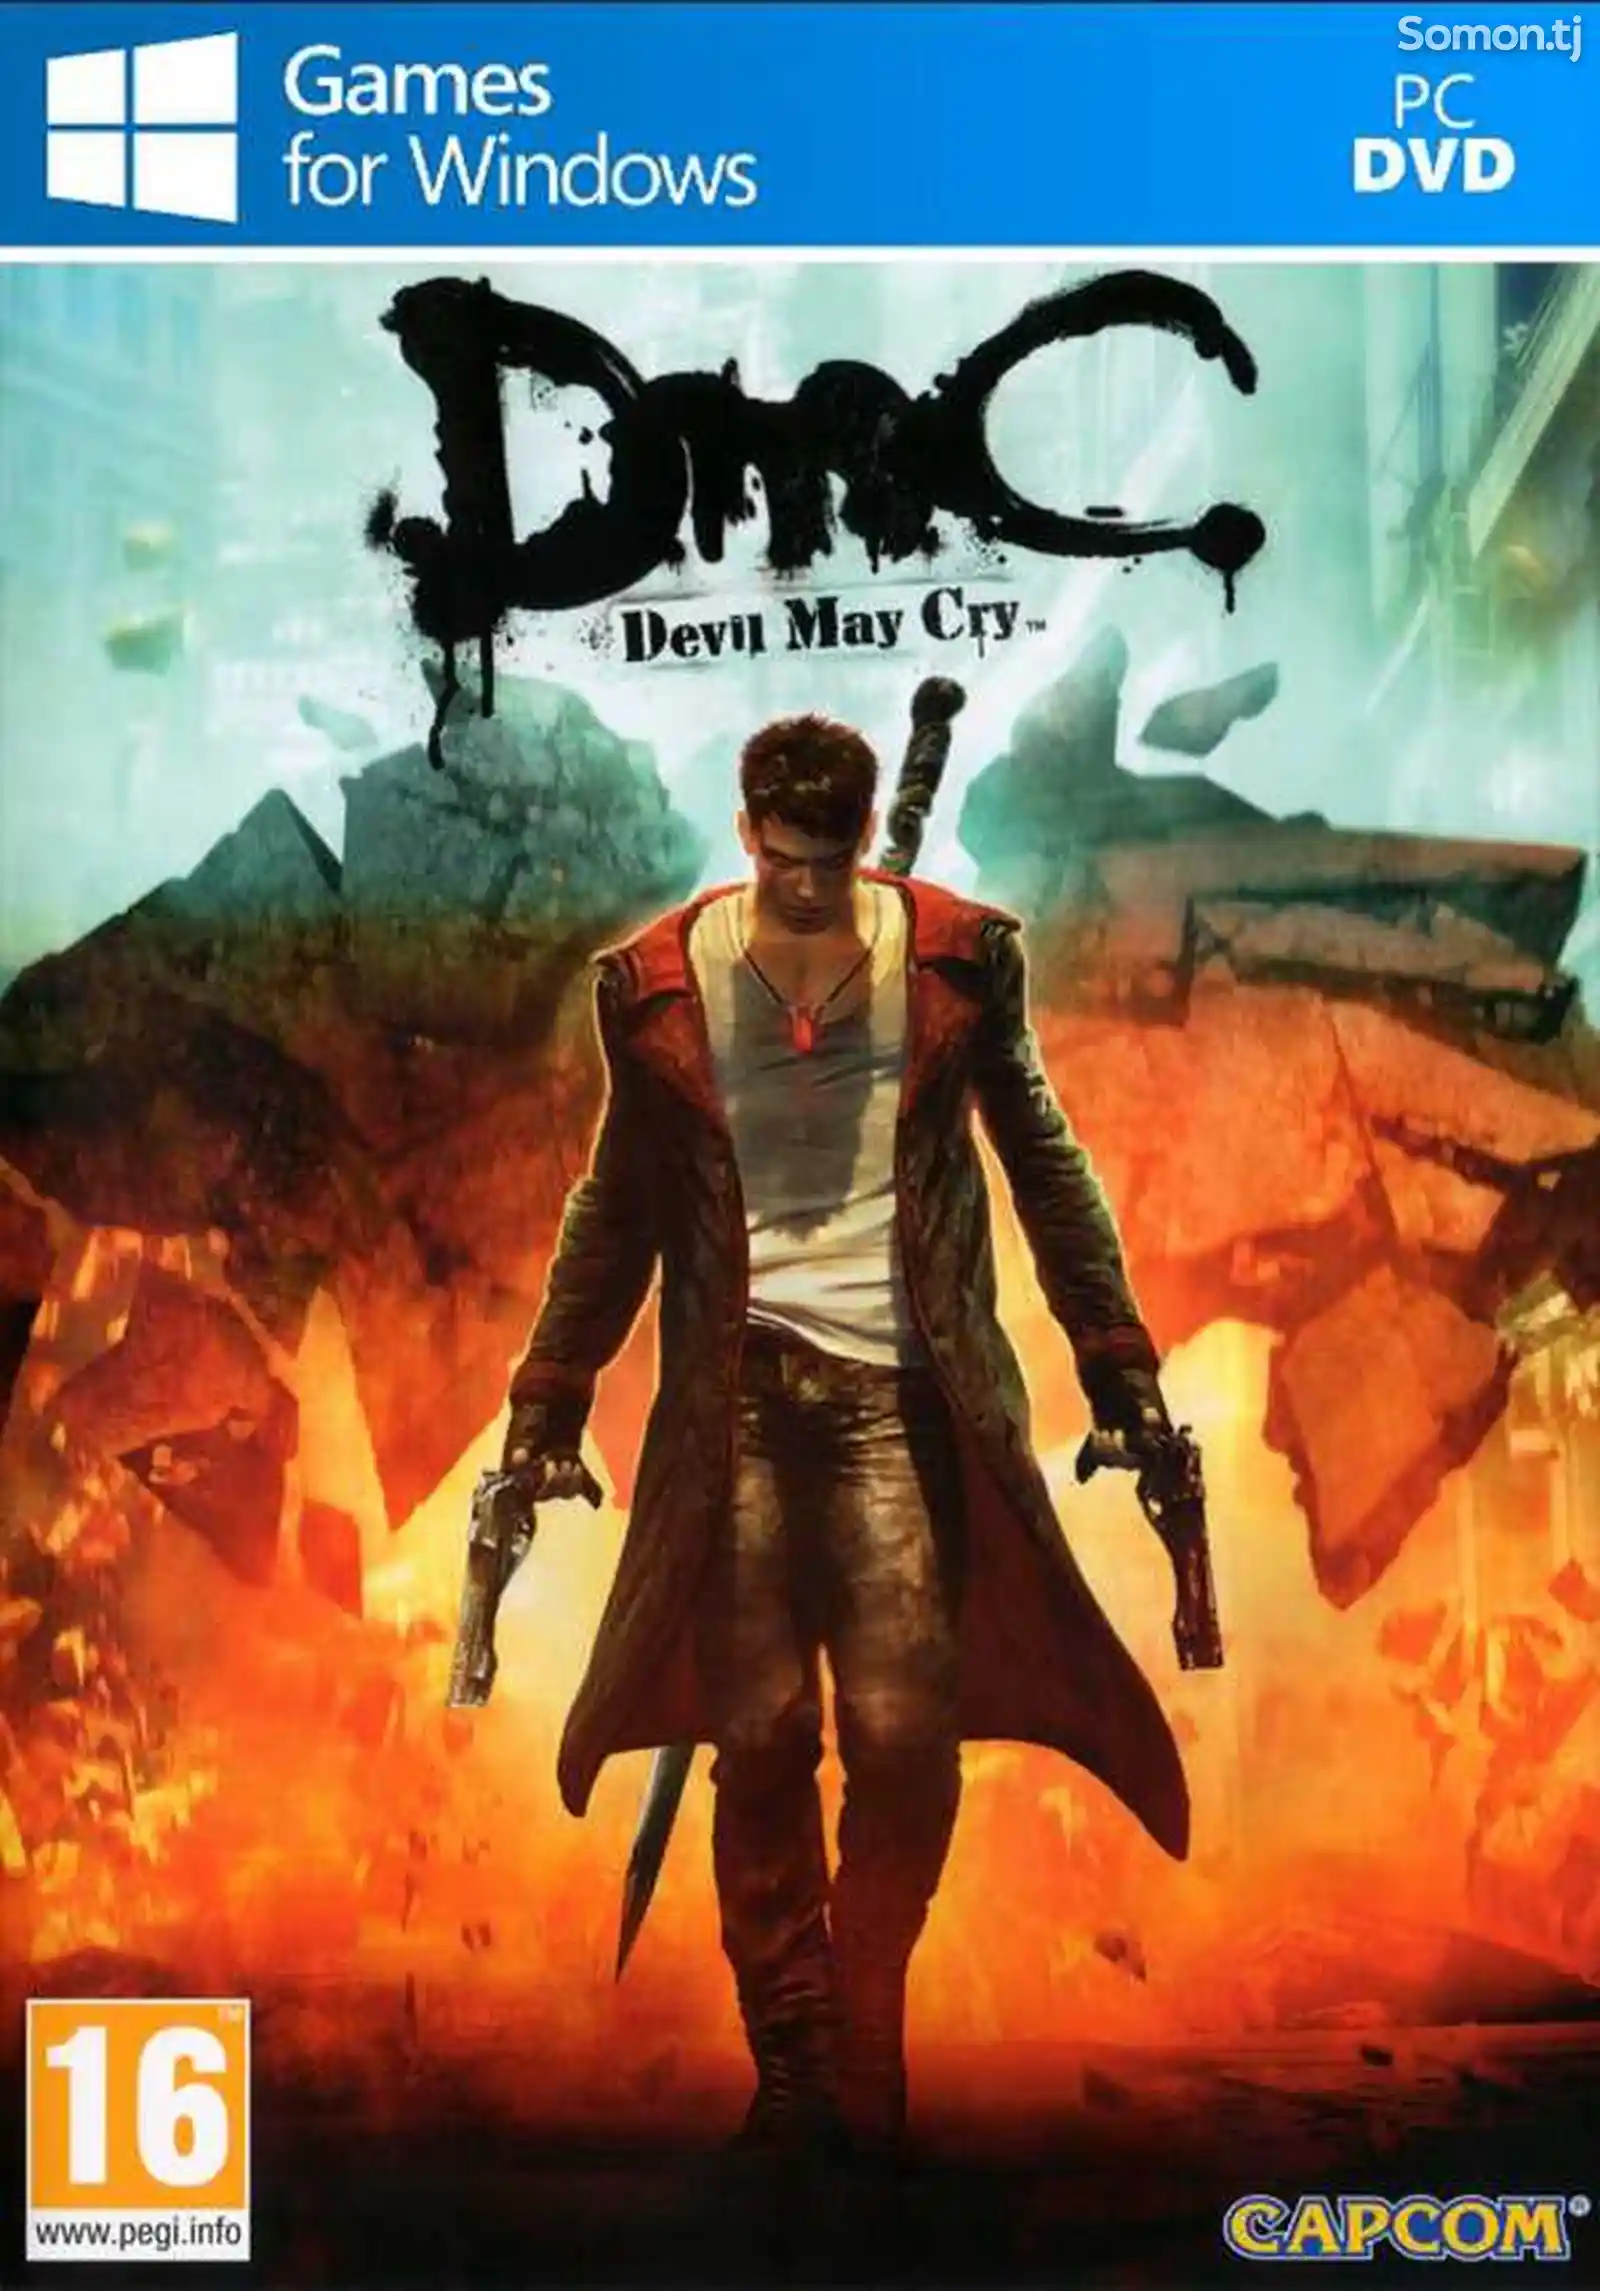 Игра Dmc devil may cry для компьютера-пк-pc-1